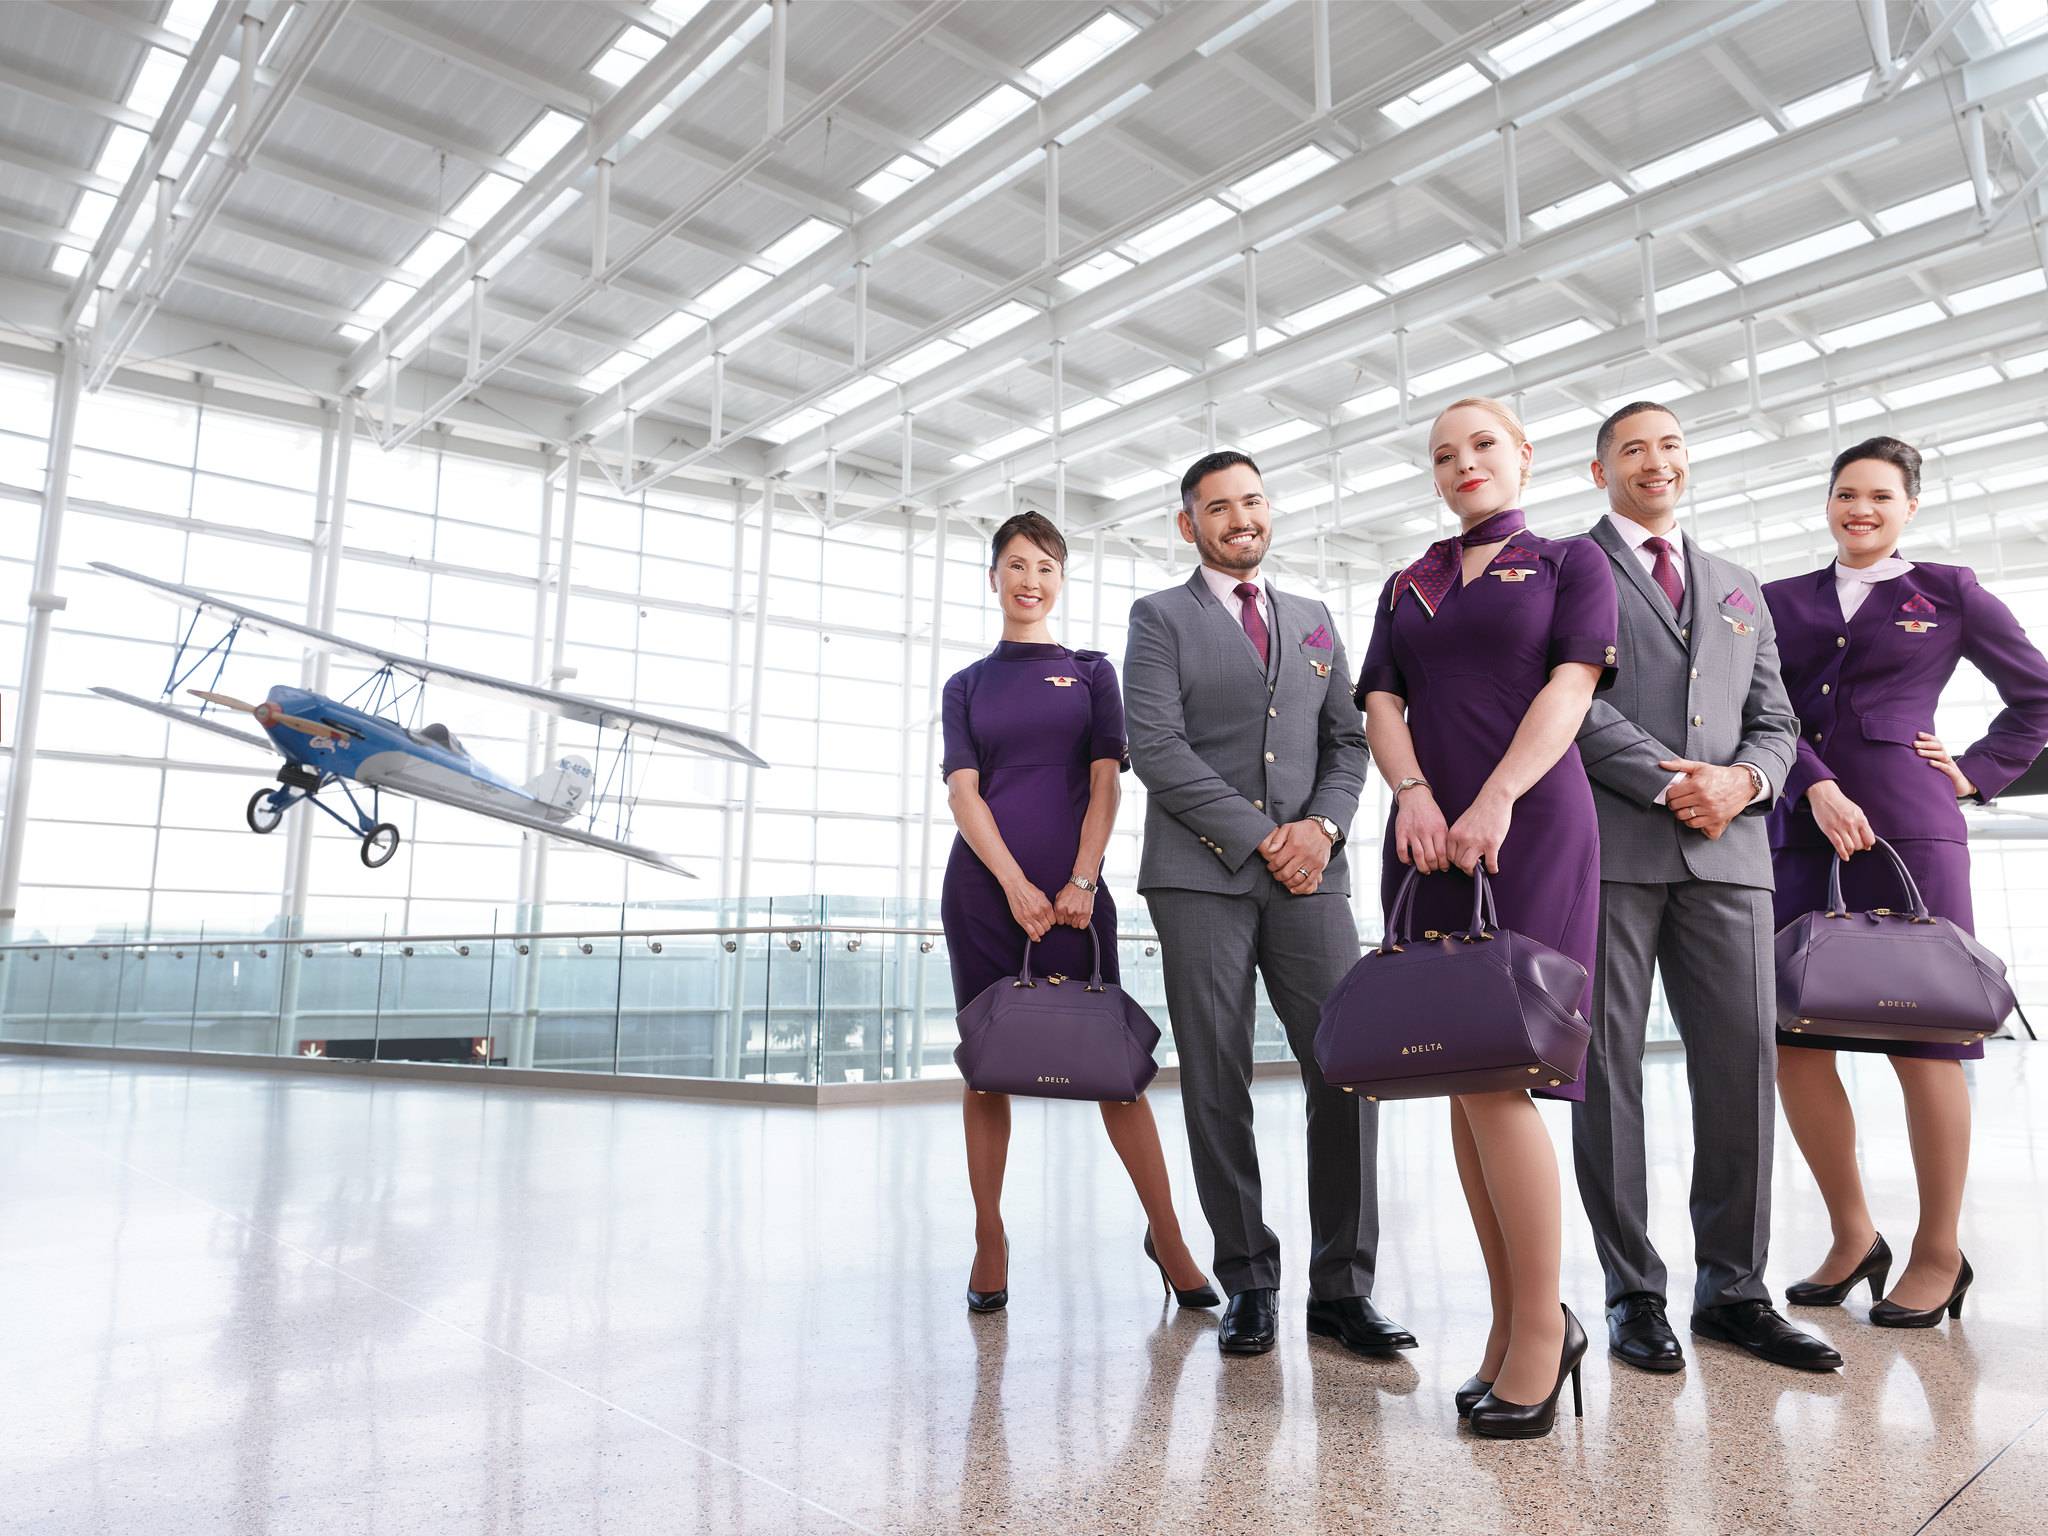 Авиакомпания дельта  — авиабилеты, сайт, онлайн регистрация, багаж — delta airlines